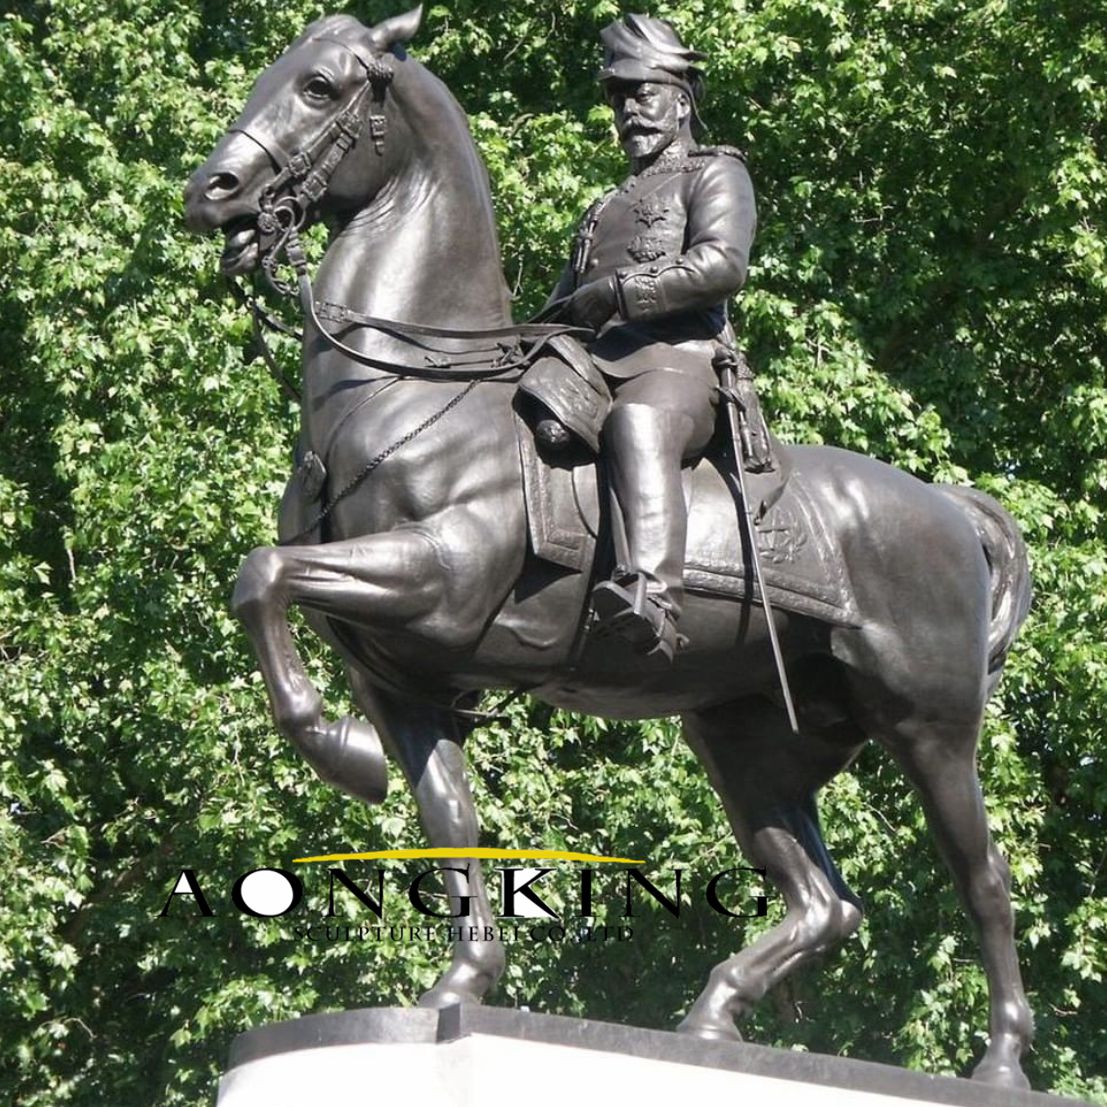 Sculpture of an officer on horseback